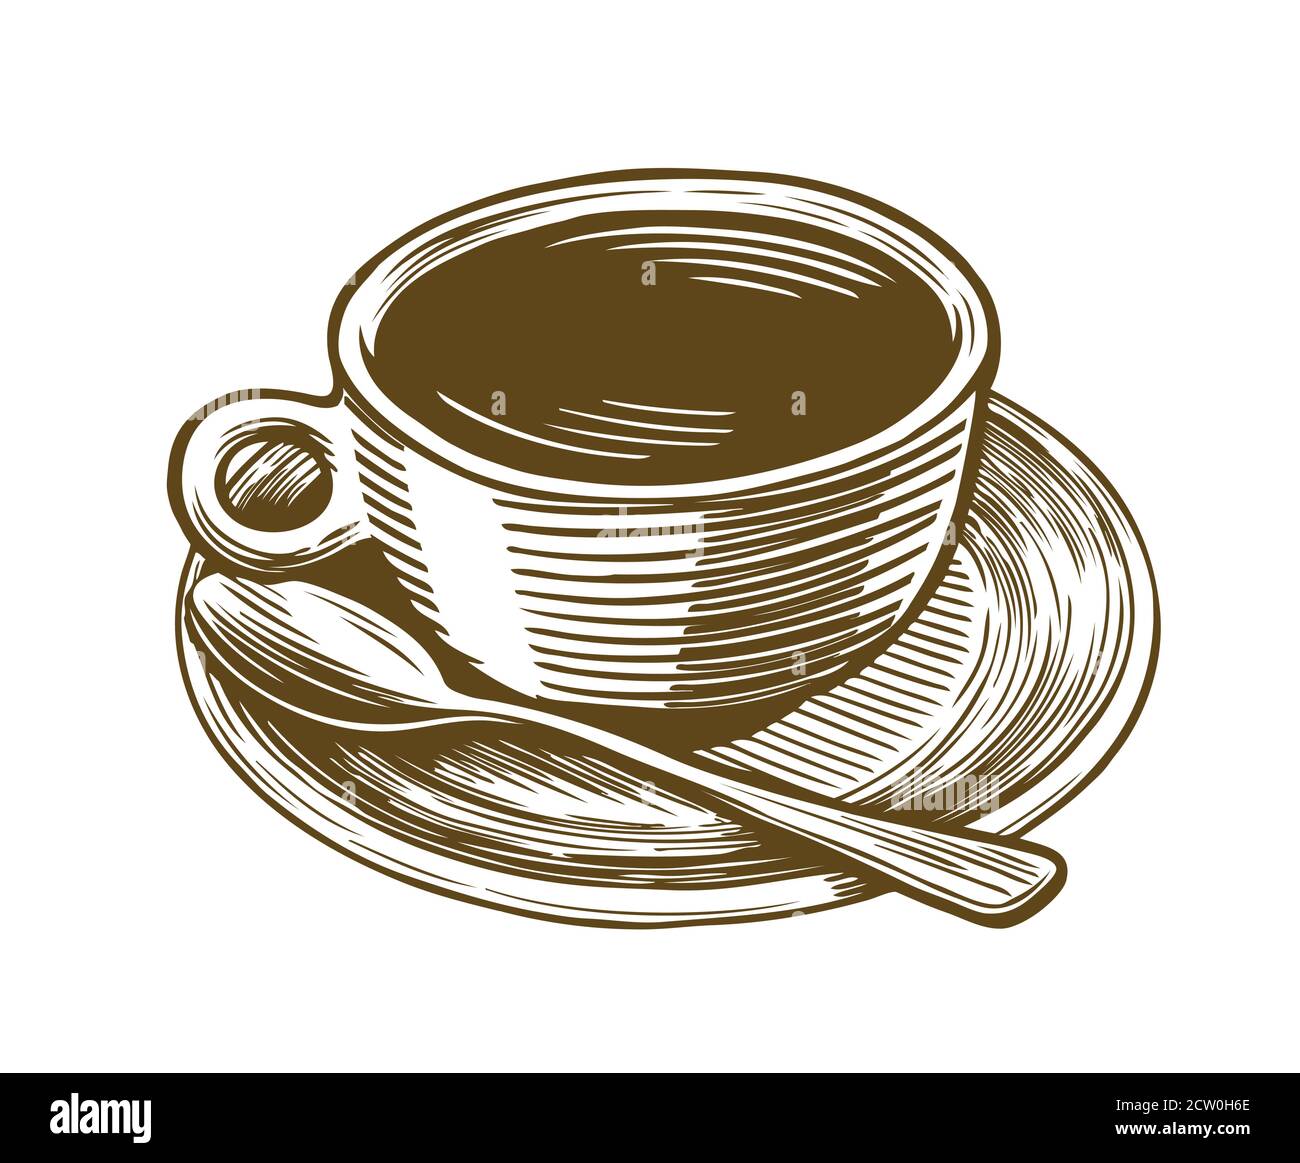 Coffee cup sketch. Drink vintage vector illustration Stock Vector